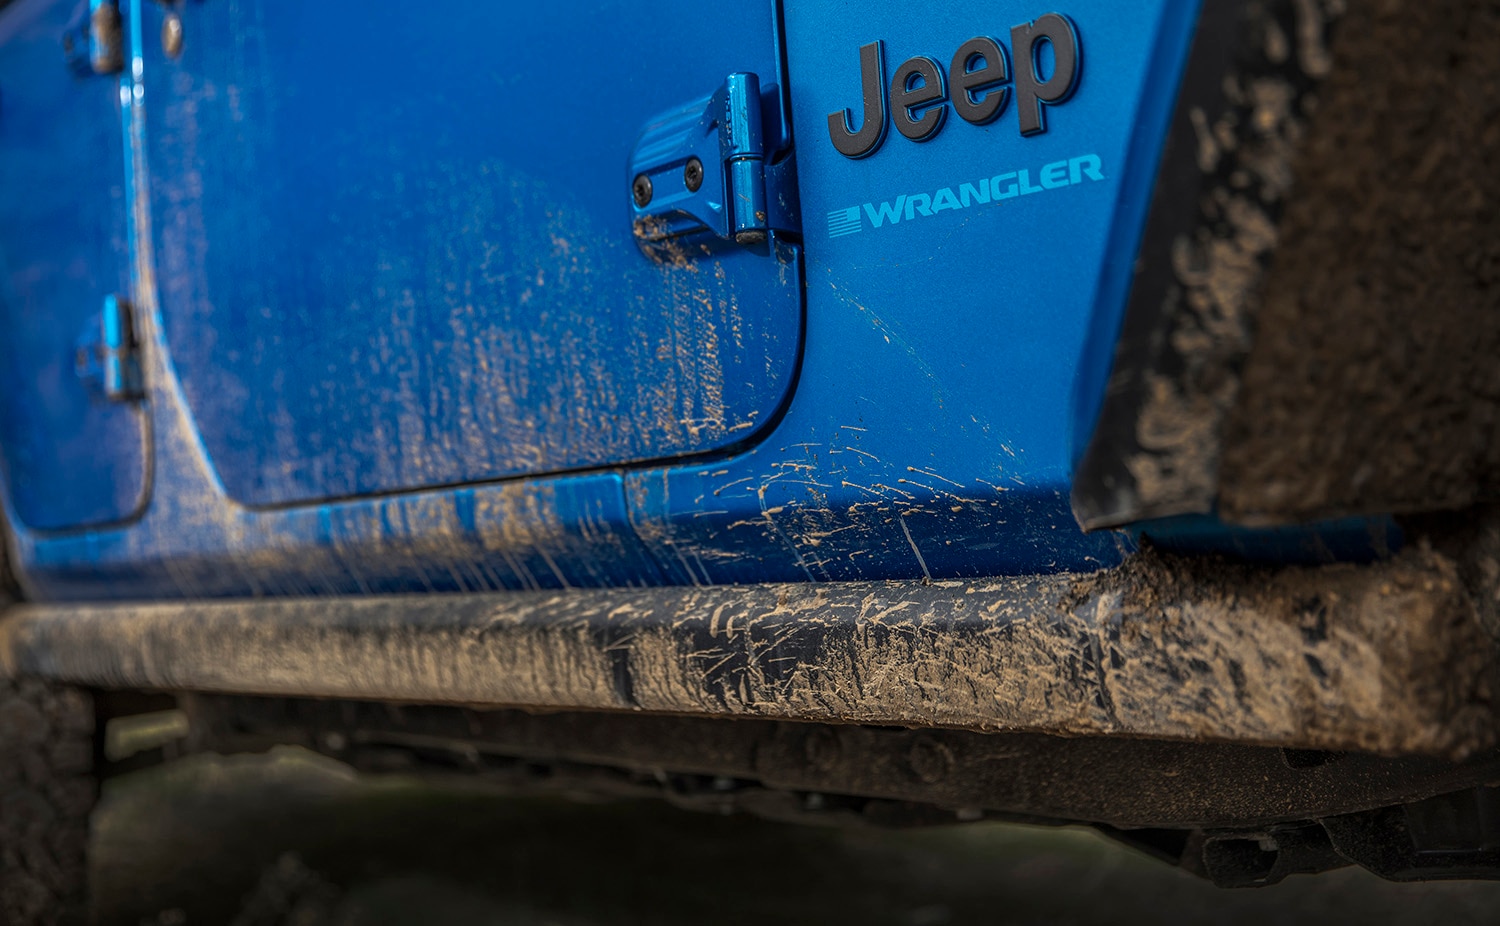  Muddy blue Jeep Wrangler close-up